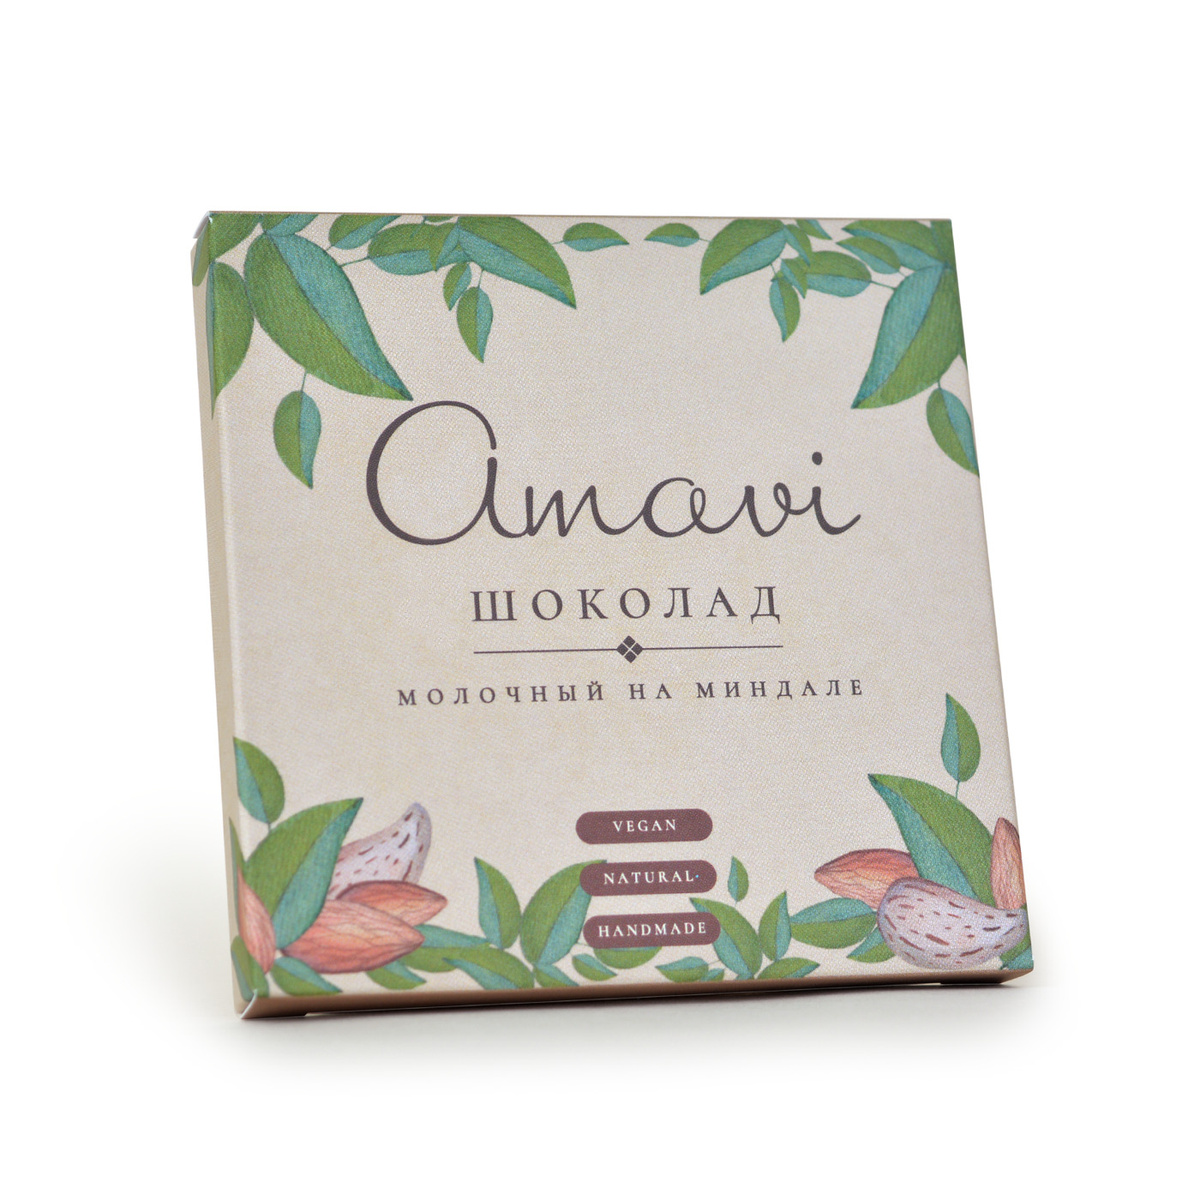 Шоколад Молочный На Миндале "Amavi", 70 г